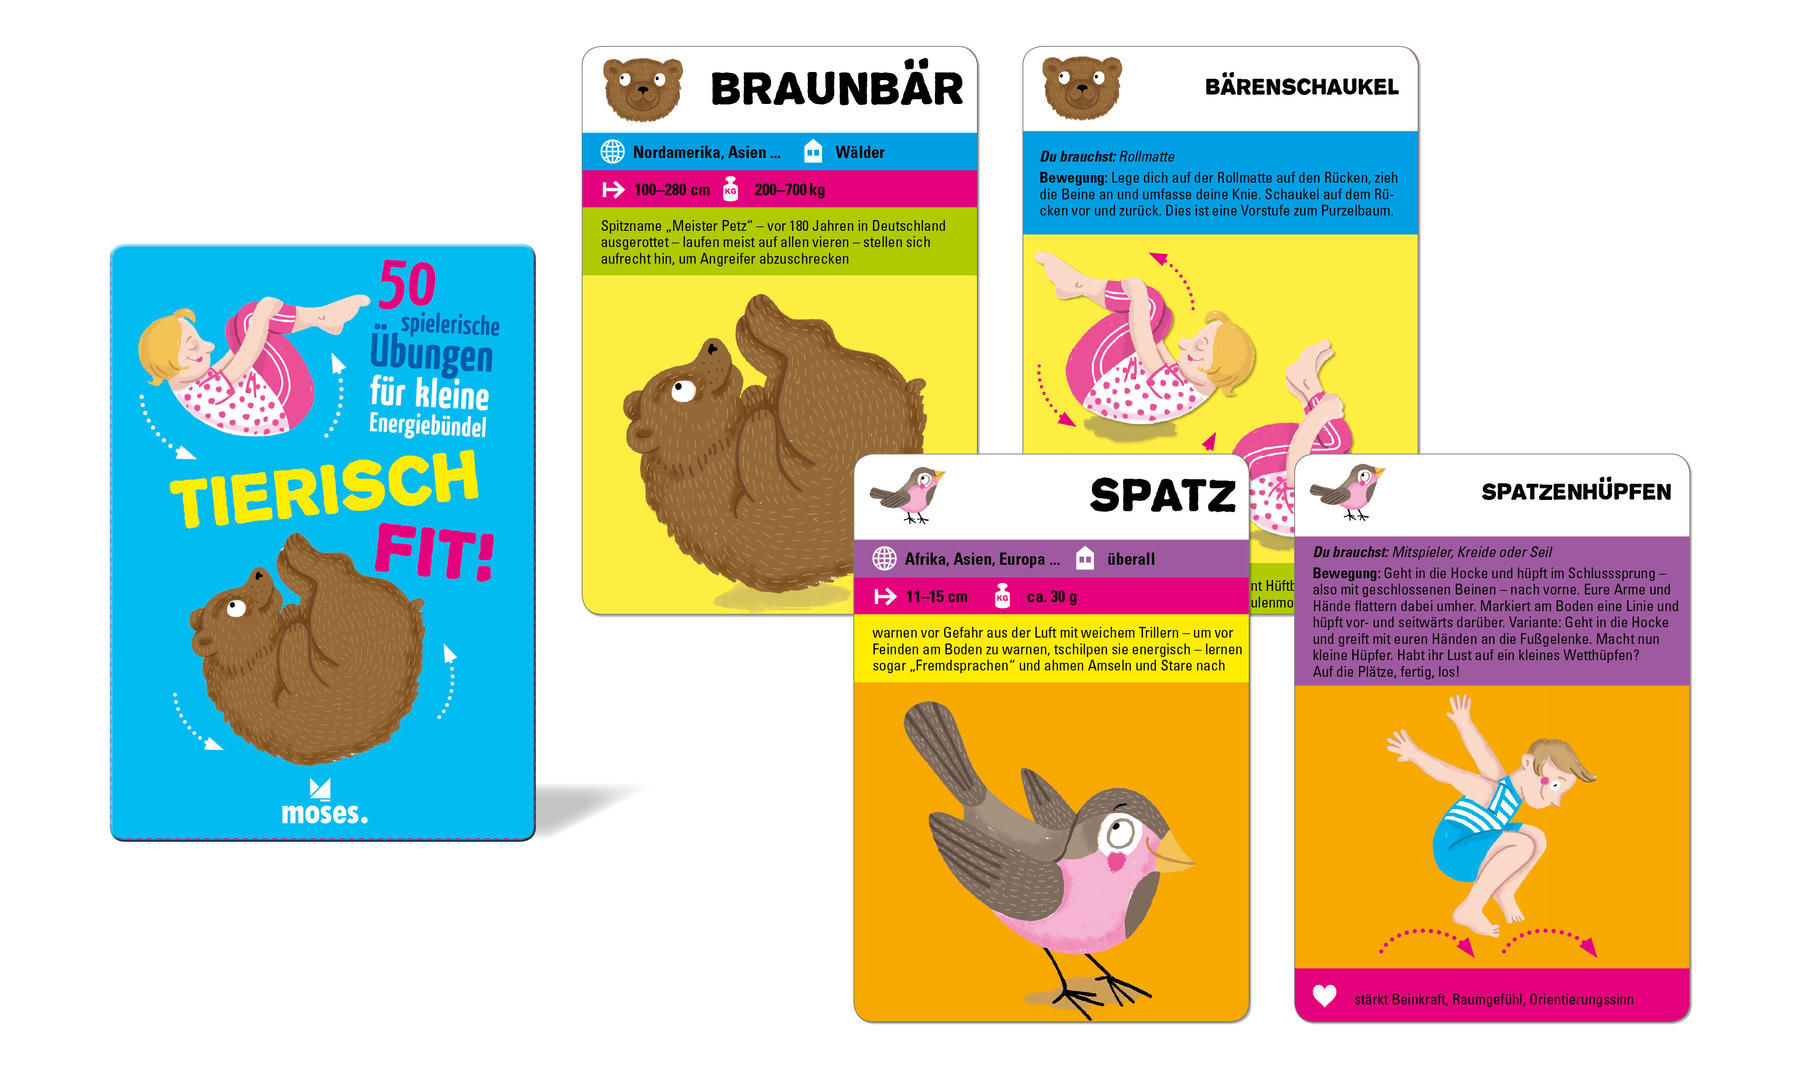 50 Karten, Tierisch fit, Beschäftigung für Kinder, Kartenset, Illustration und Gestaltung Isabel Große Holtforth